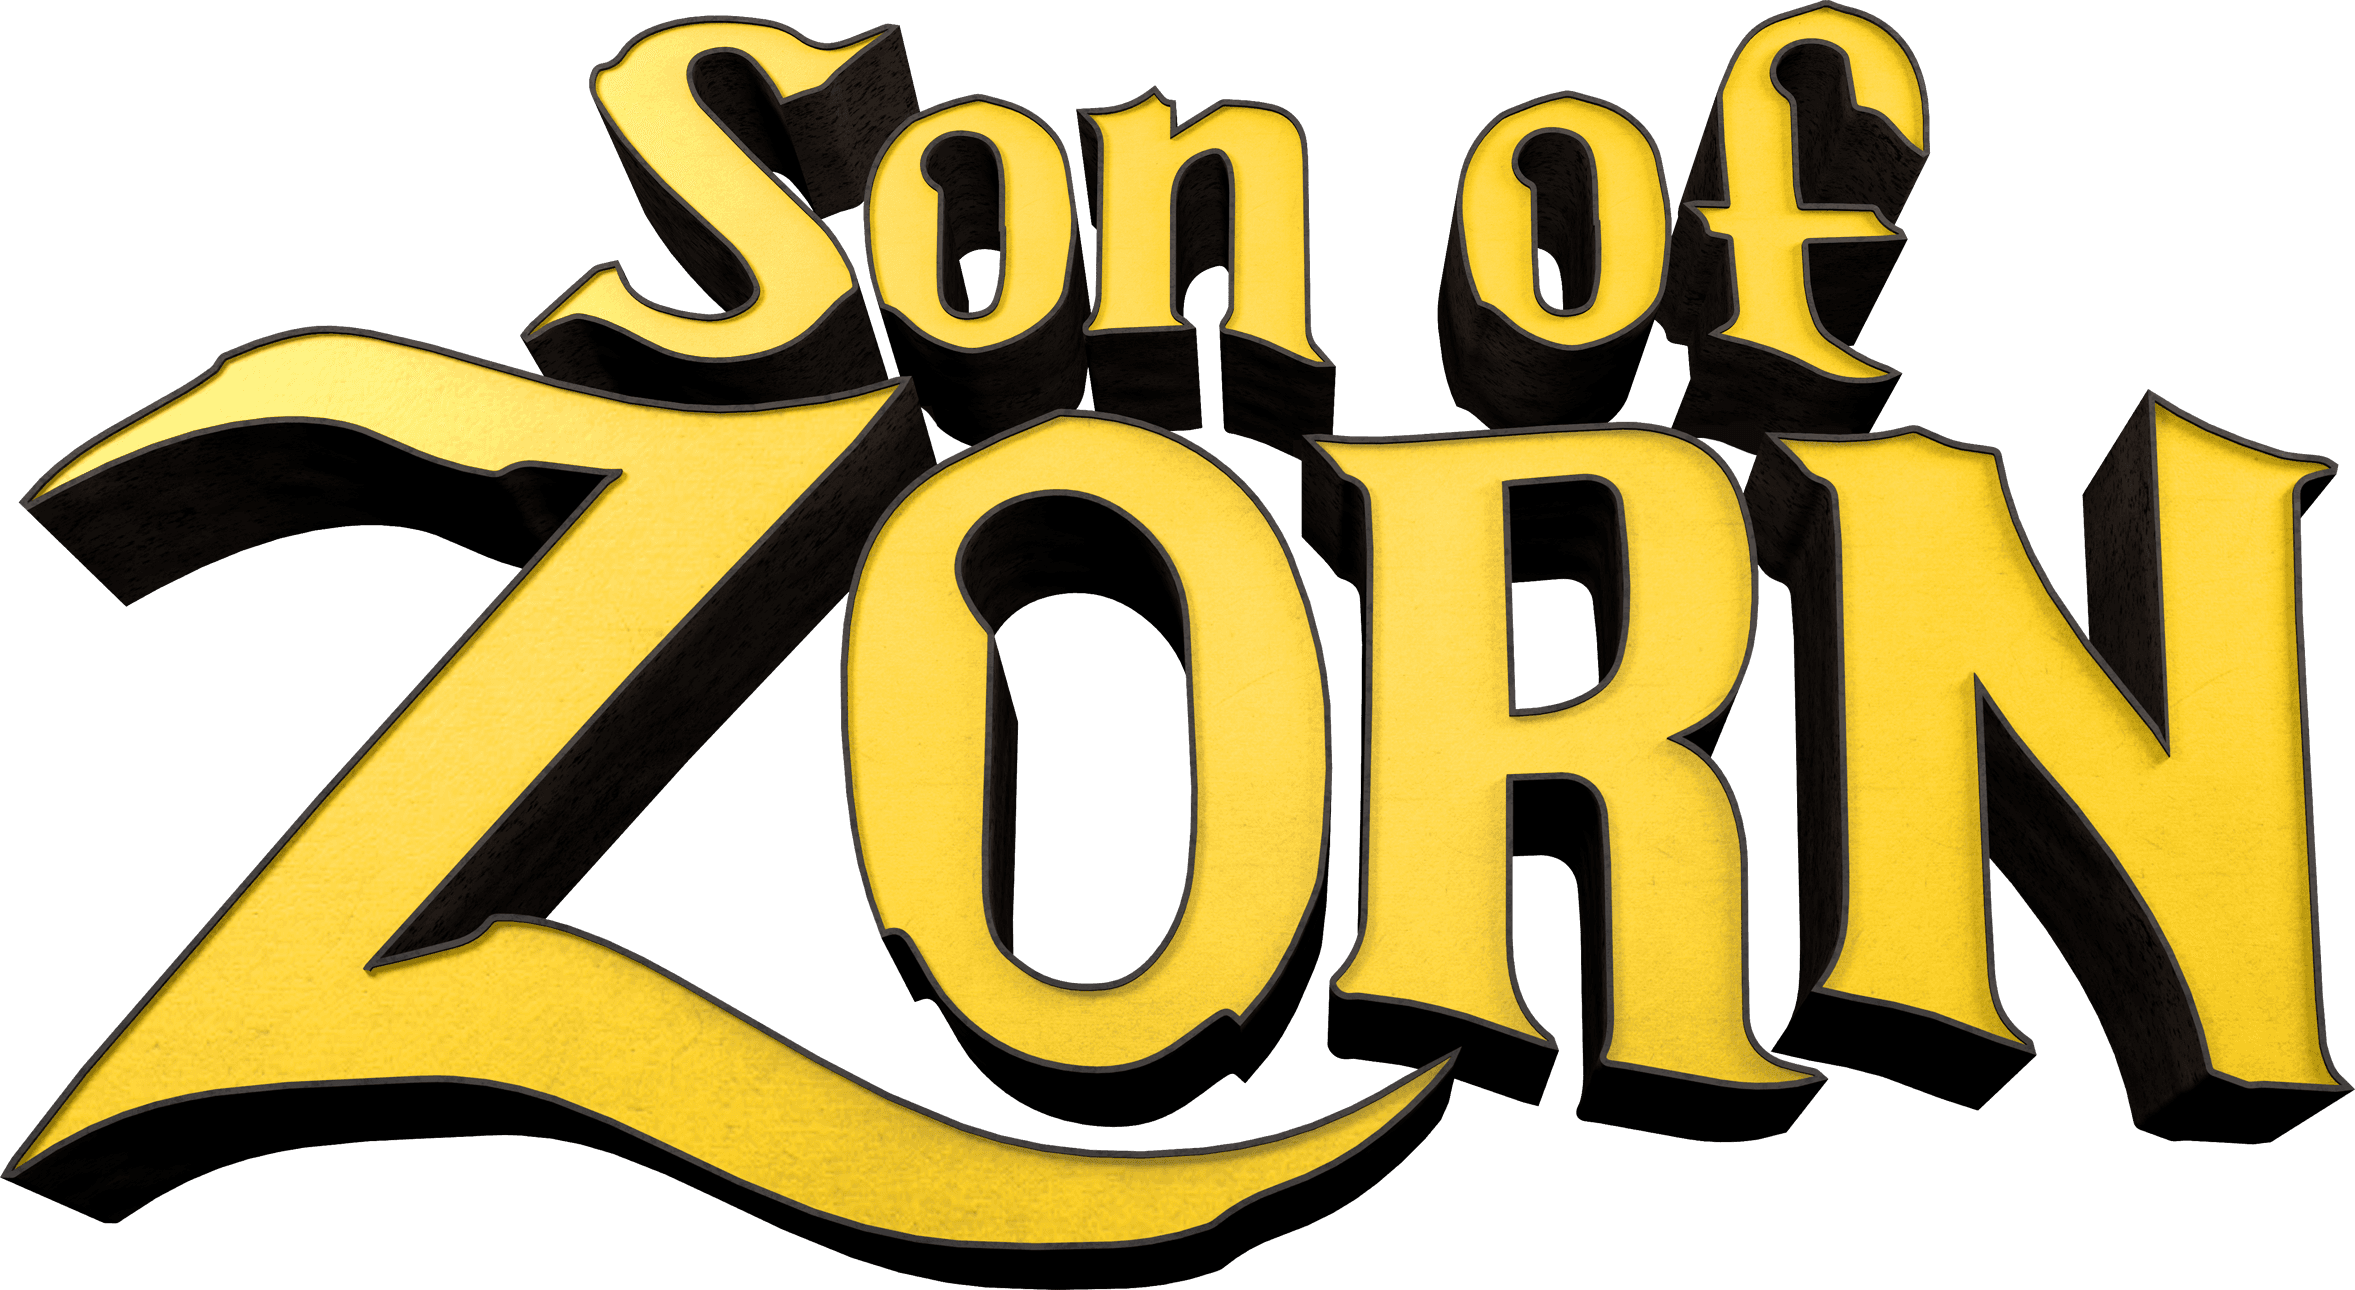 Son of Zorn logo